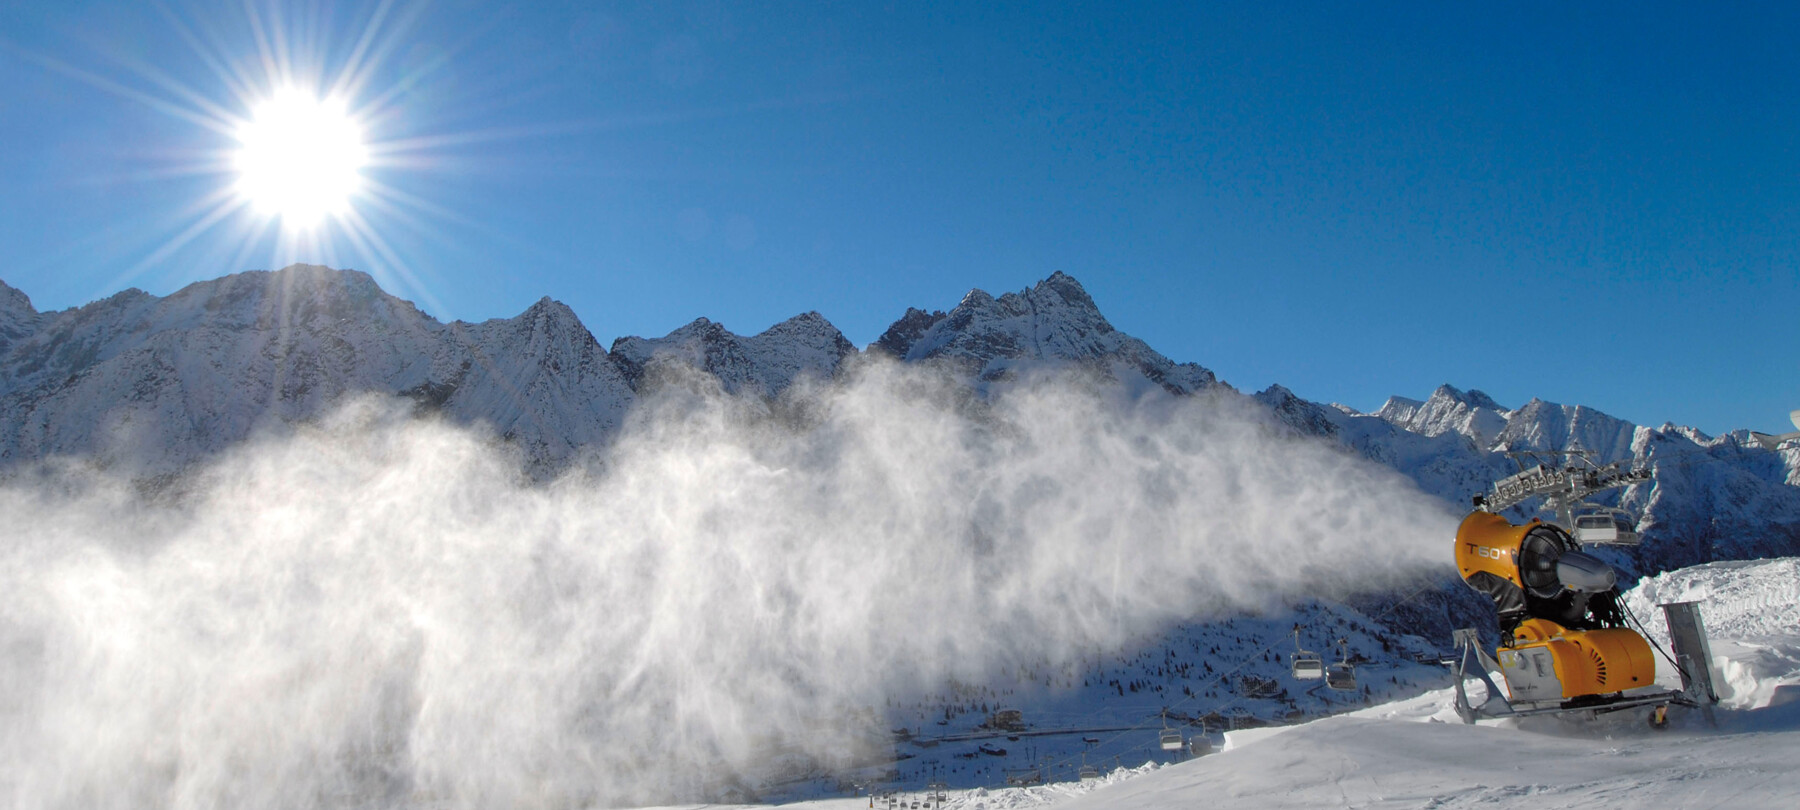 Passo del Tonale - Panorama con cannone da neve - photo Daniele Lira